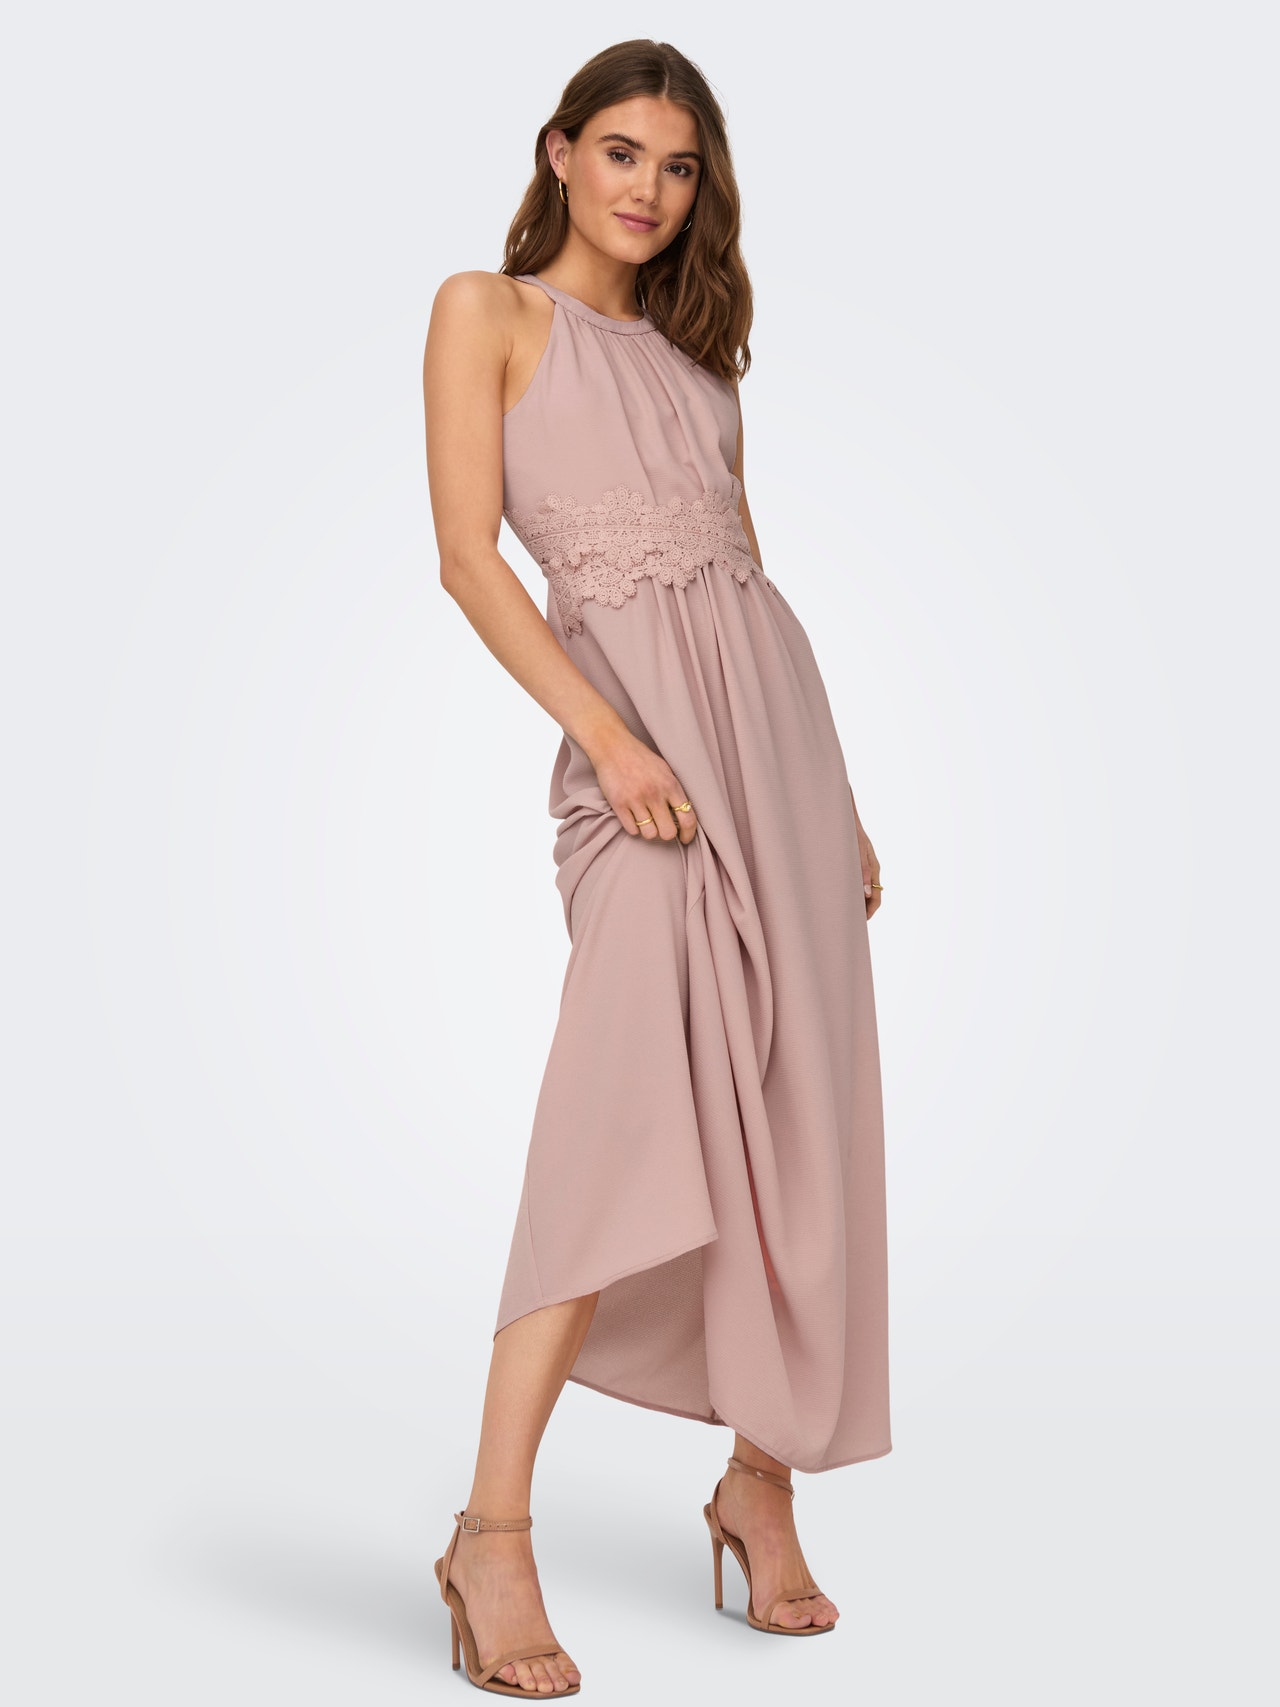 ONLY Maxi Halterneck Dress -Misty Rose - 15304689